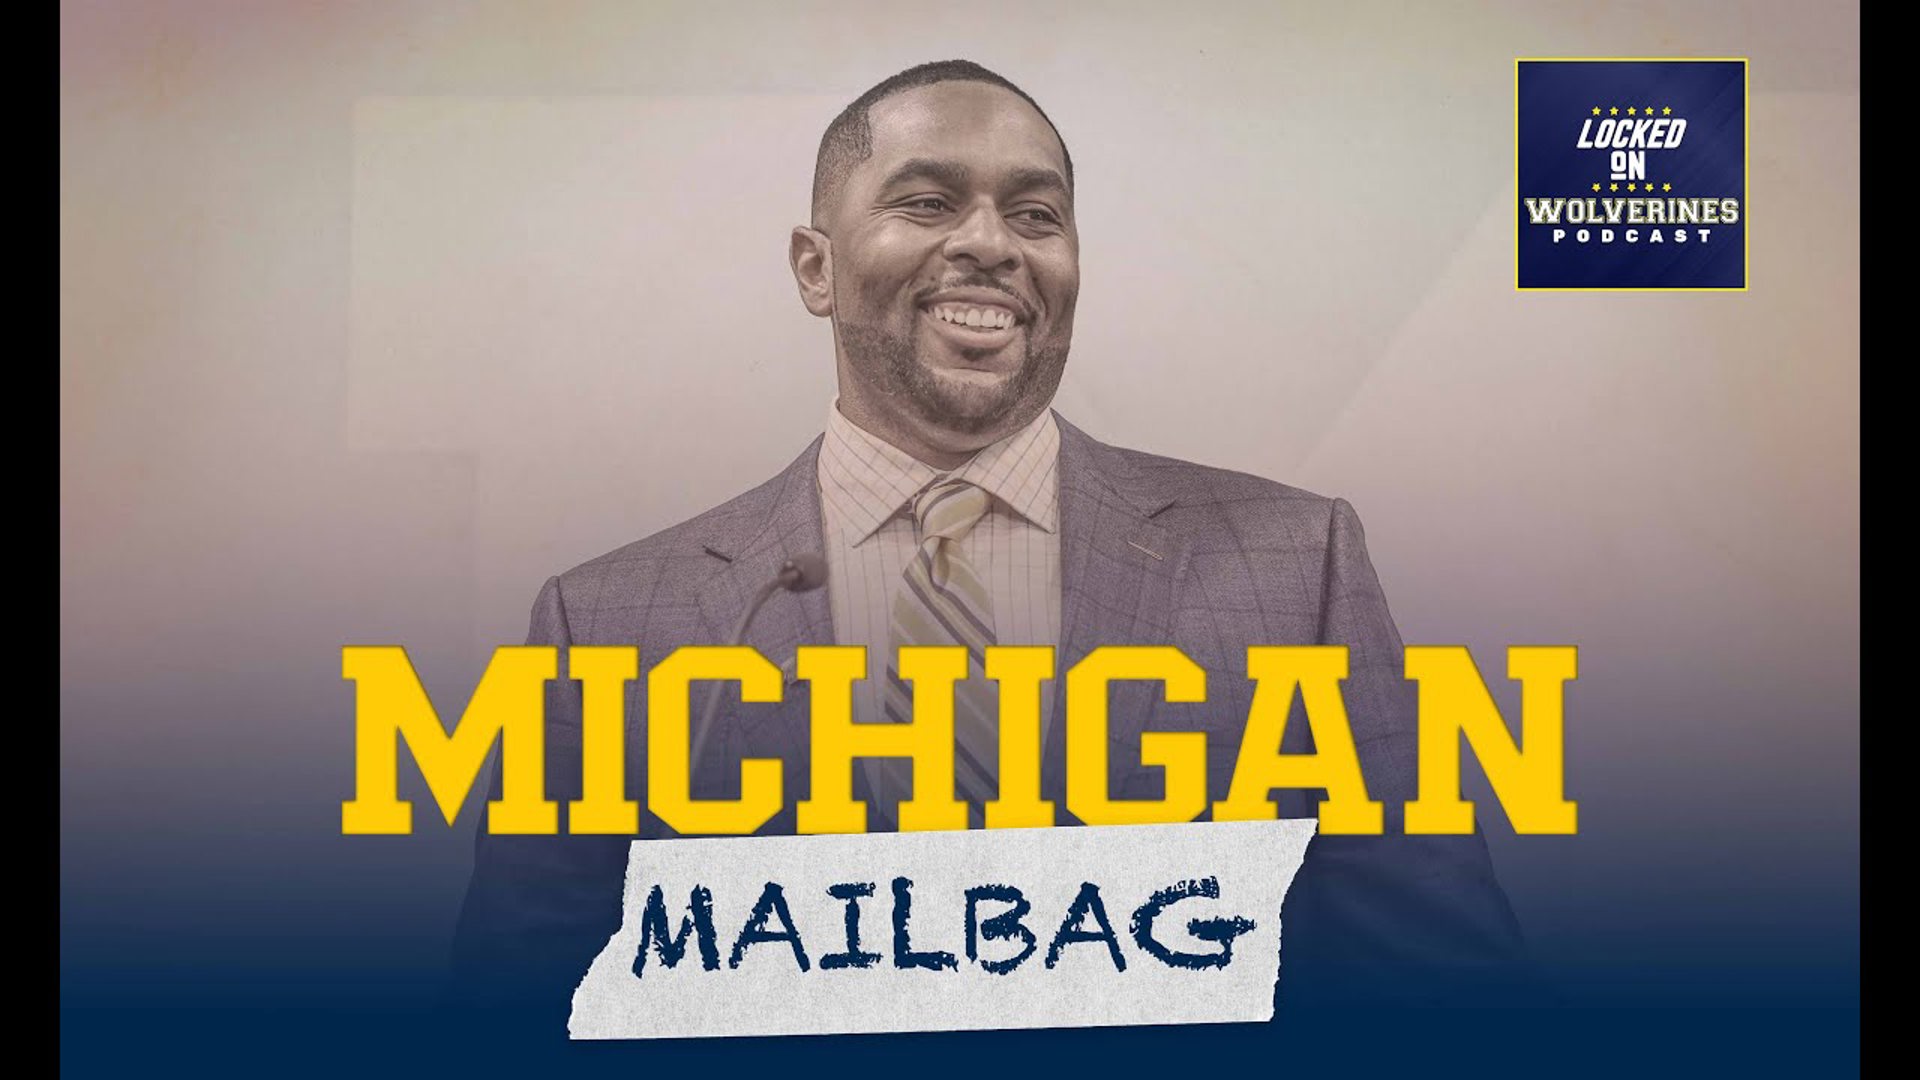 Michigan Mailbag has us making predictions for next season